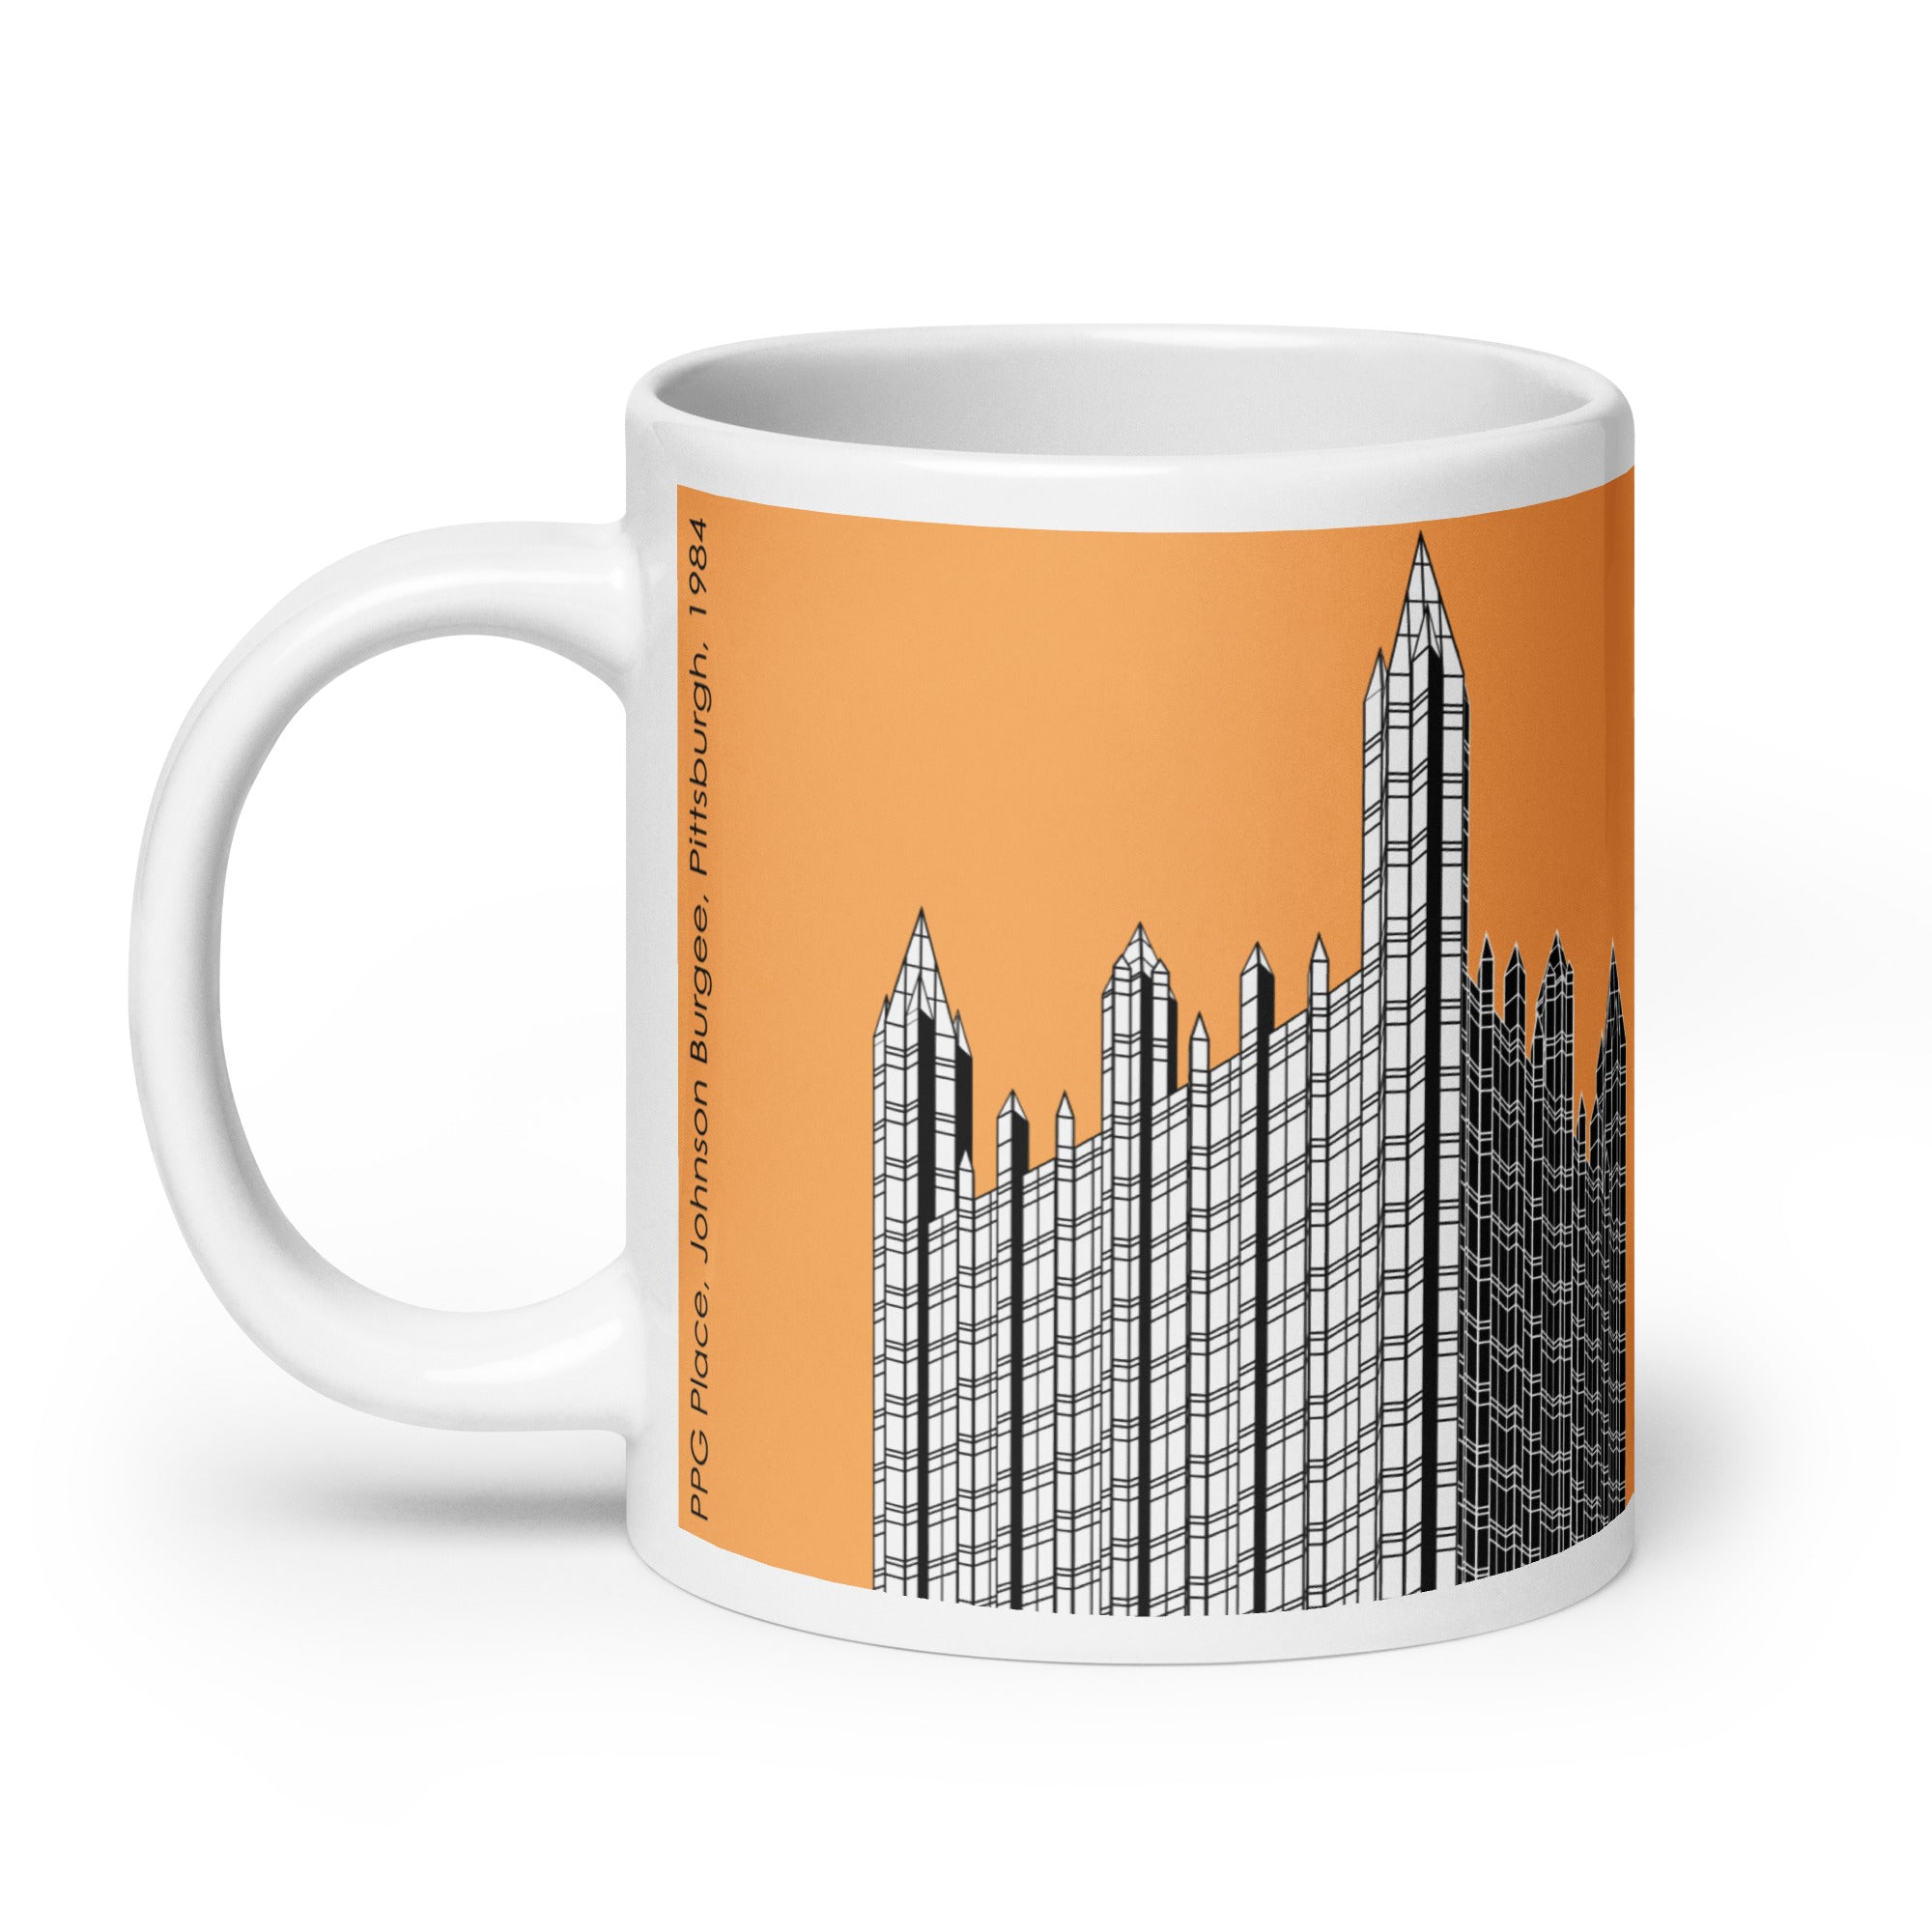 PPG Place Orange Mugs